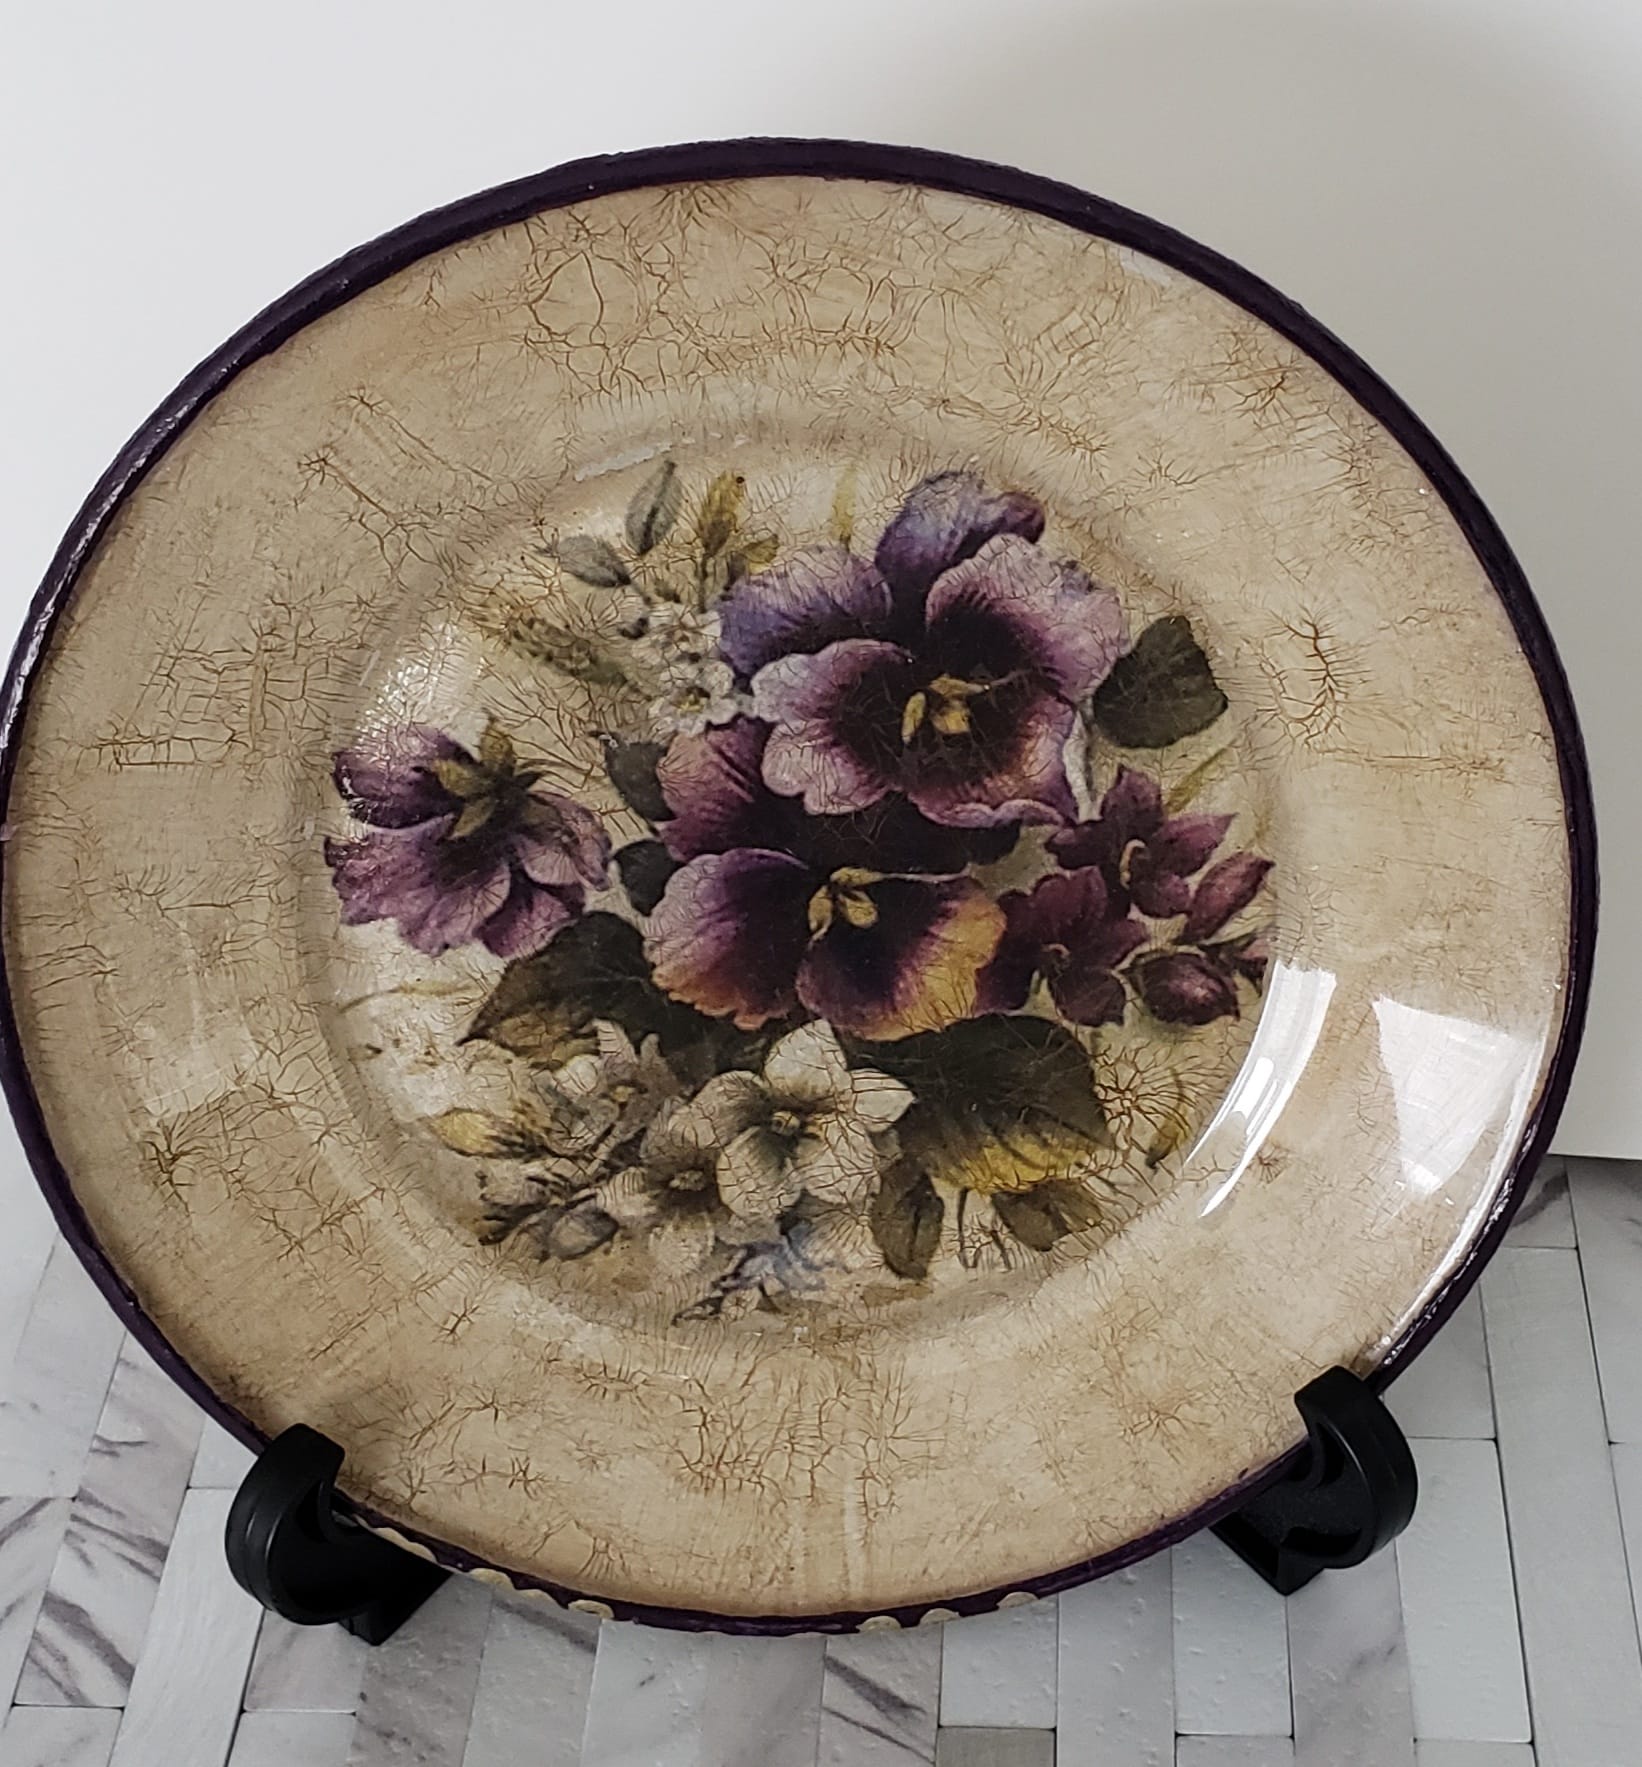 Vintage Floral Plate 2 Decorative Plate - Laila Beauty Care Decorative Plate